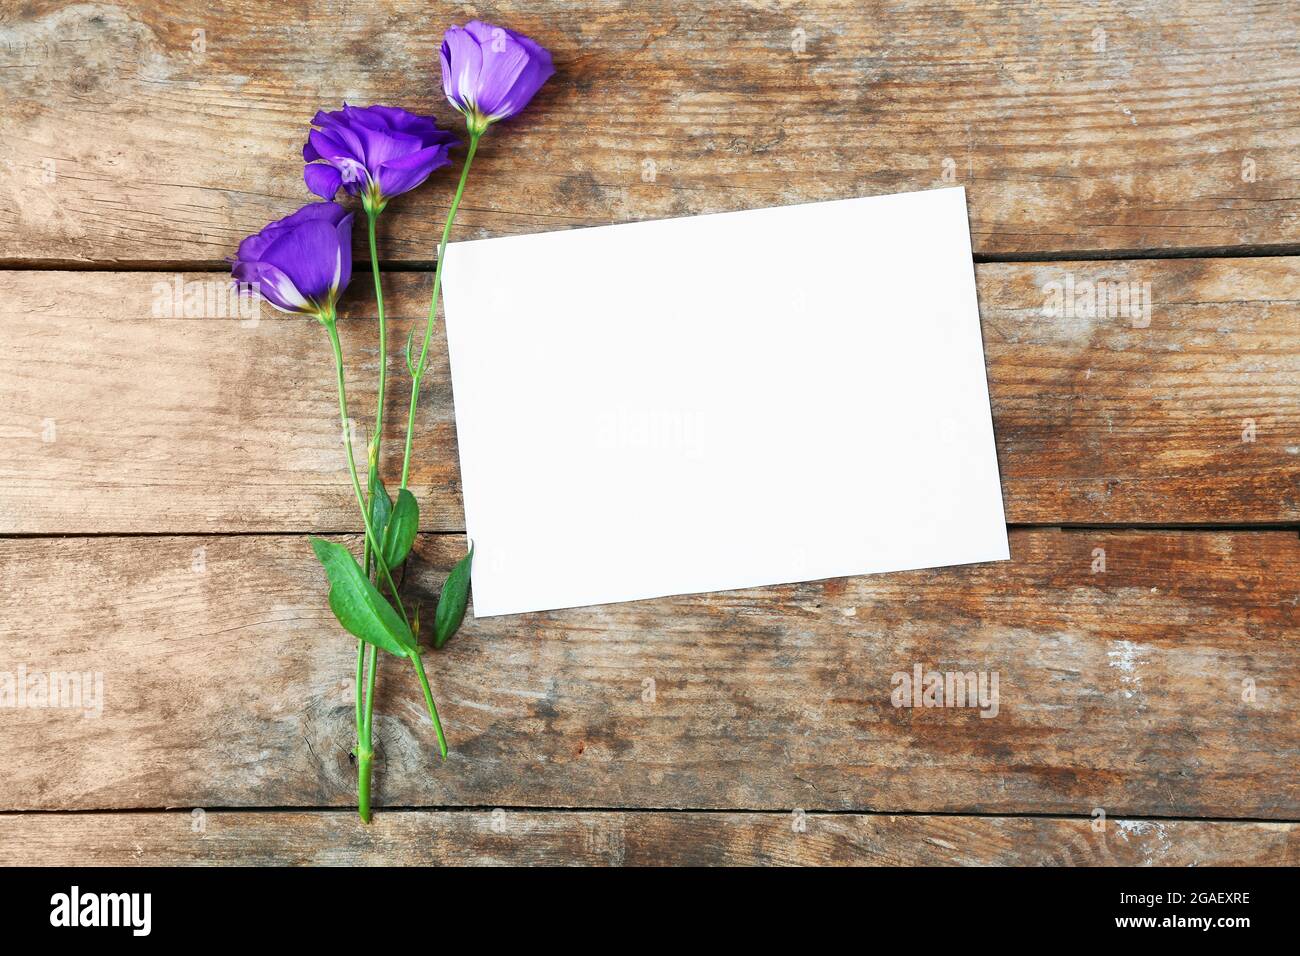 Feuille blanche et fleur violette sur fond en bois, espace vide Photo Stock  - Alamy